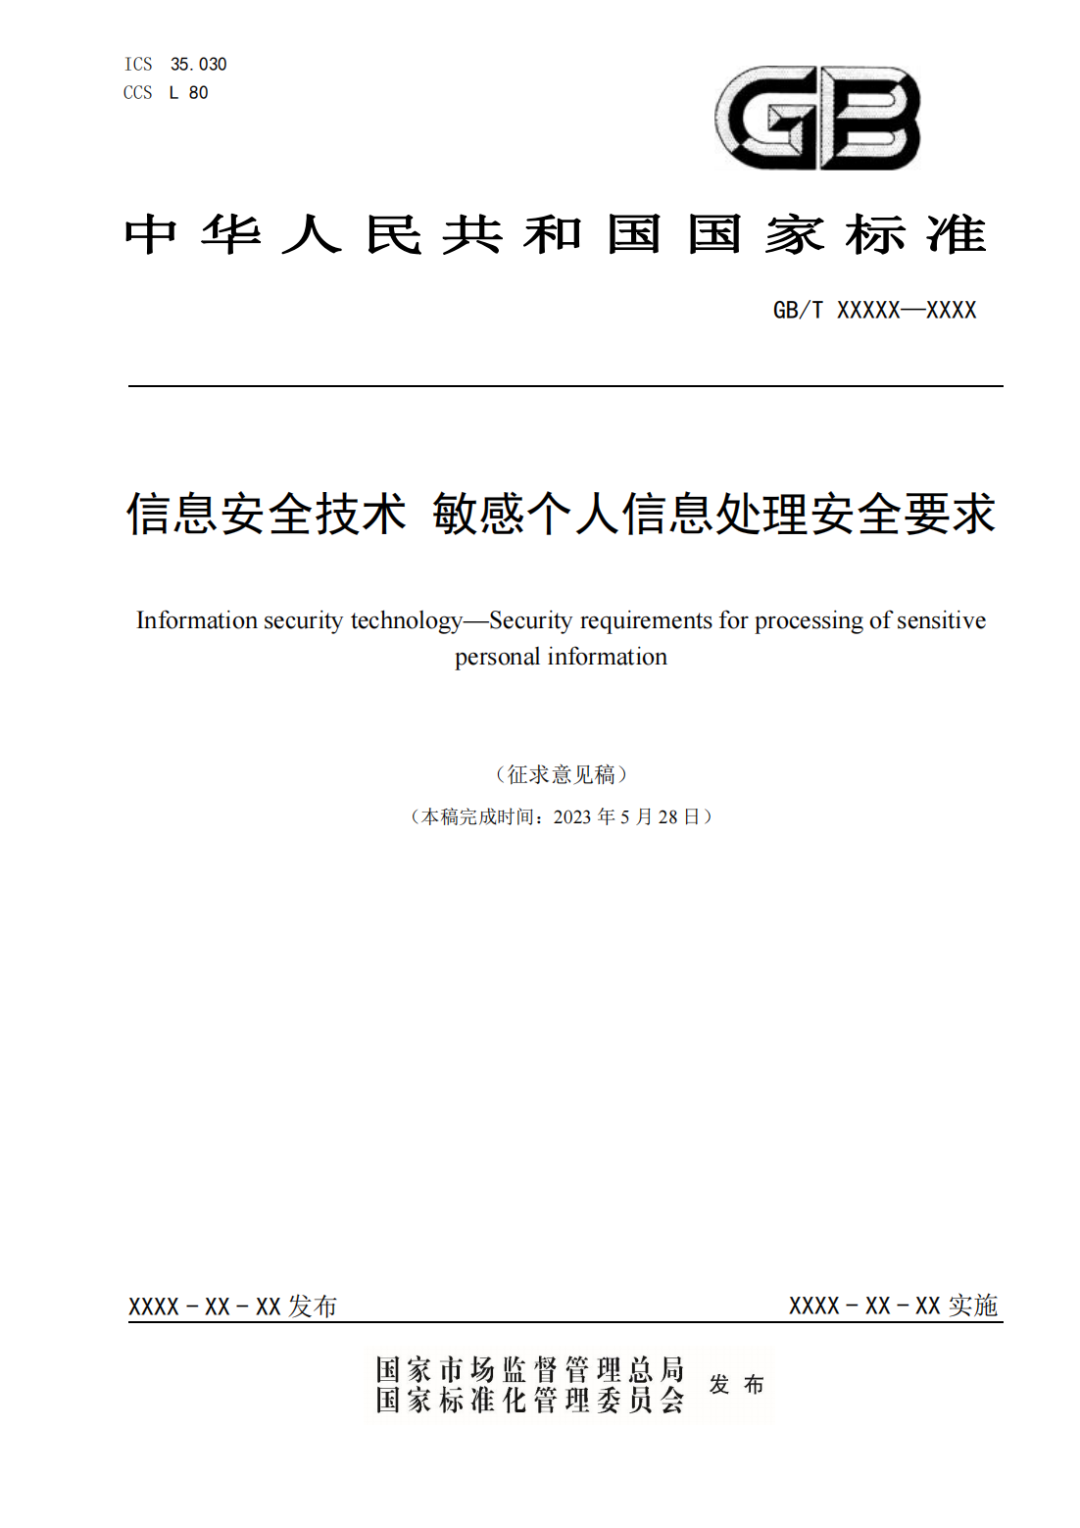 国家标准 | 汉华信安参与《信息安全技术 敏感个人信息处理安全要求》编写